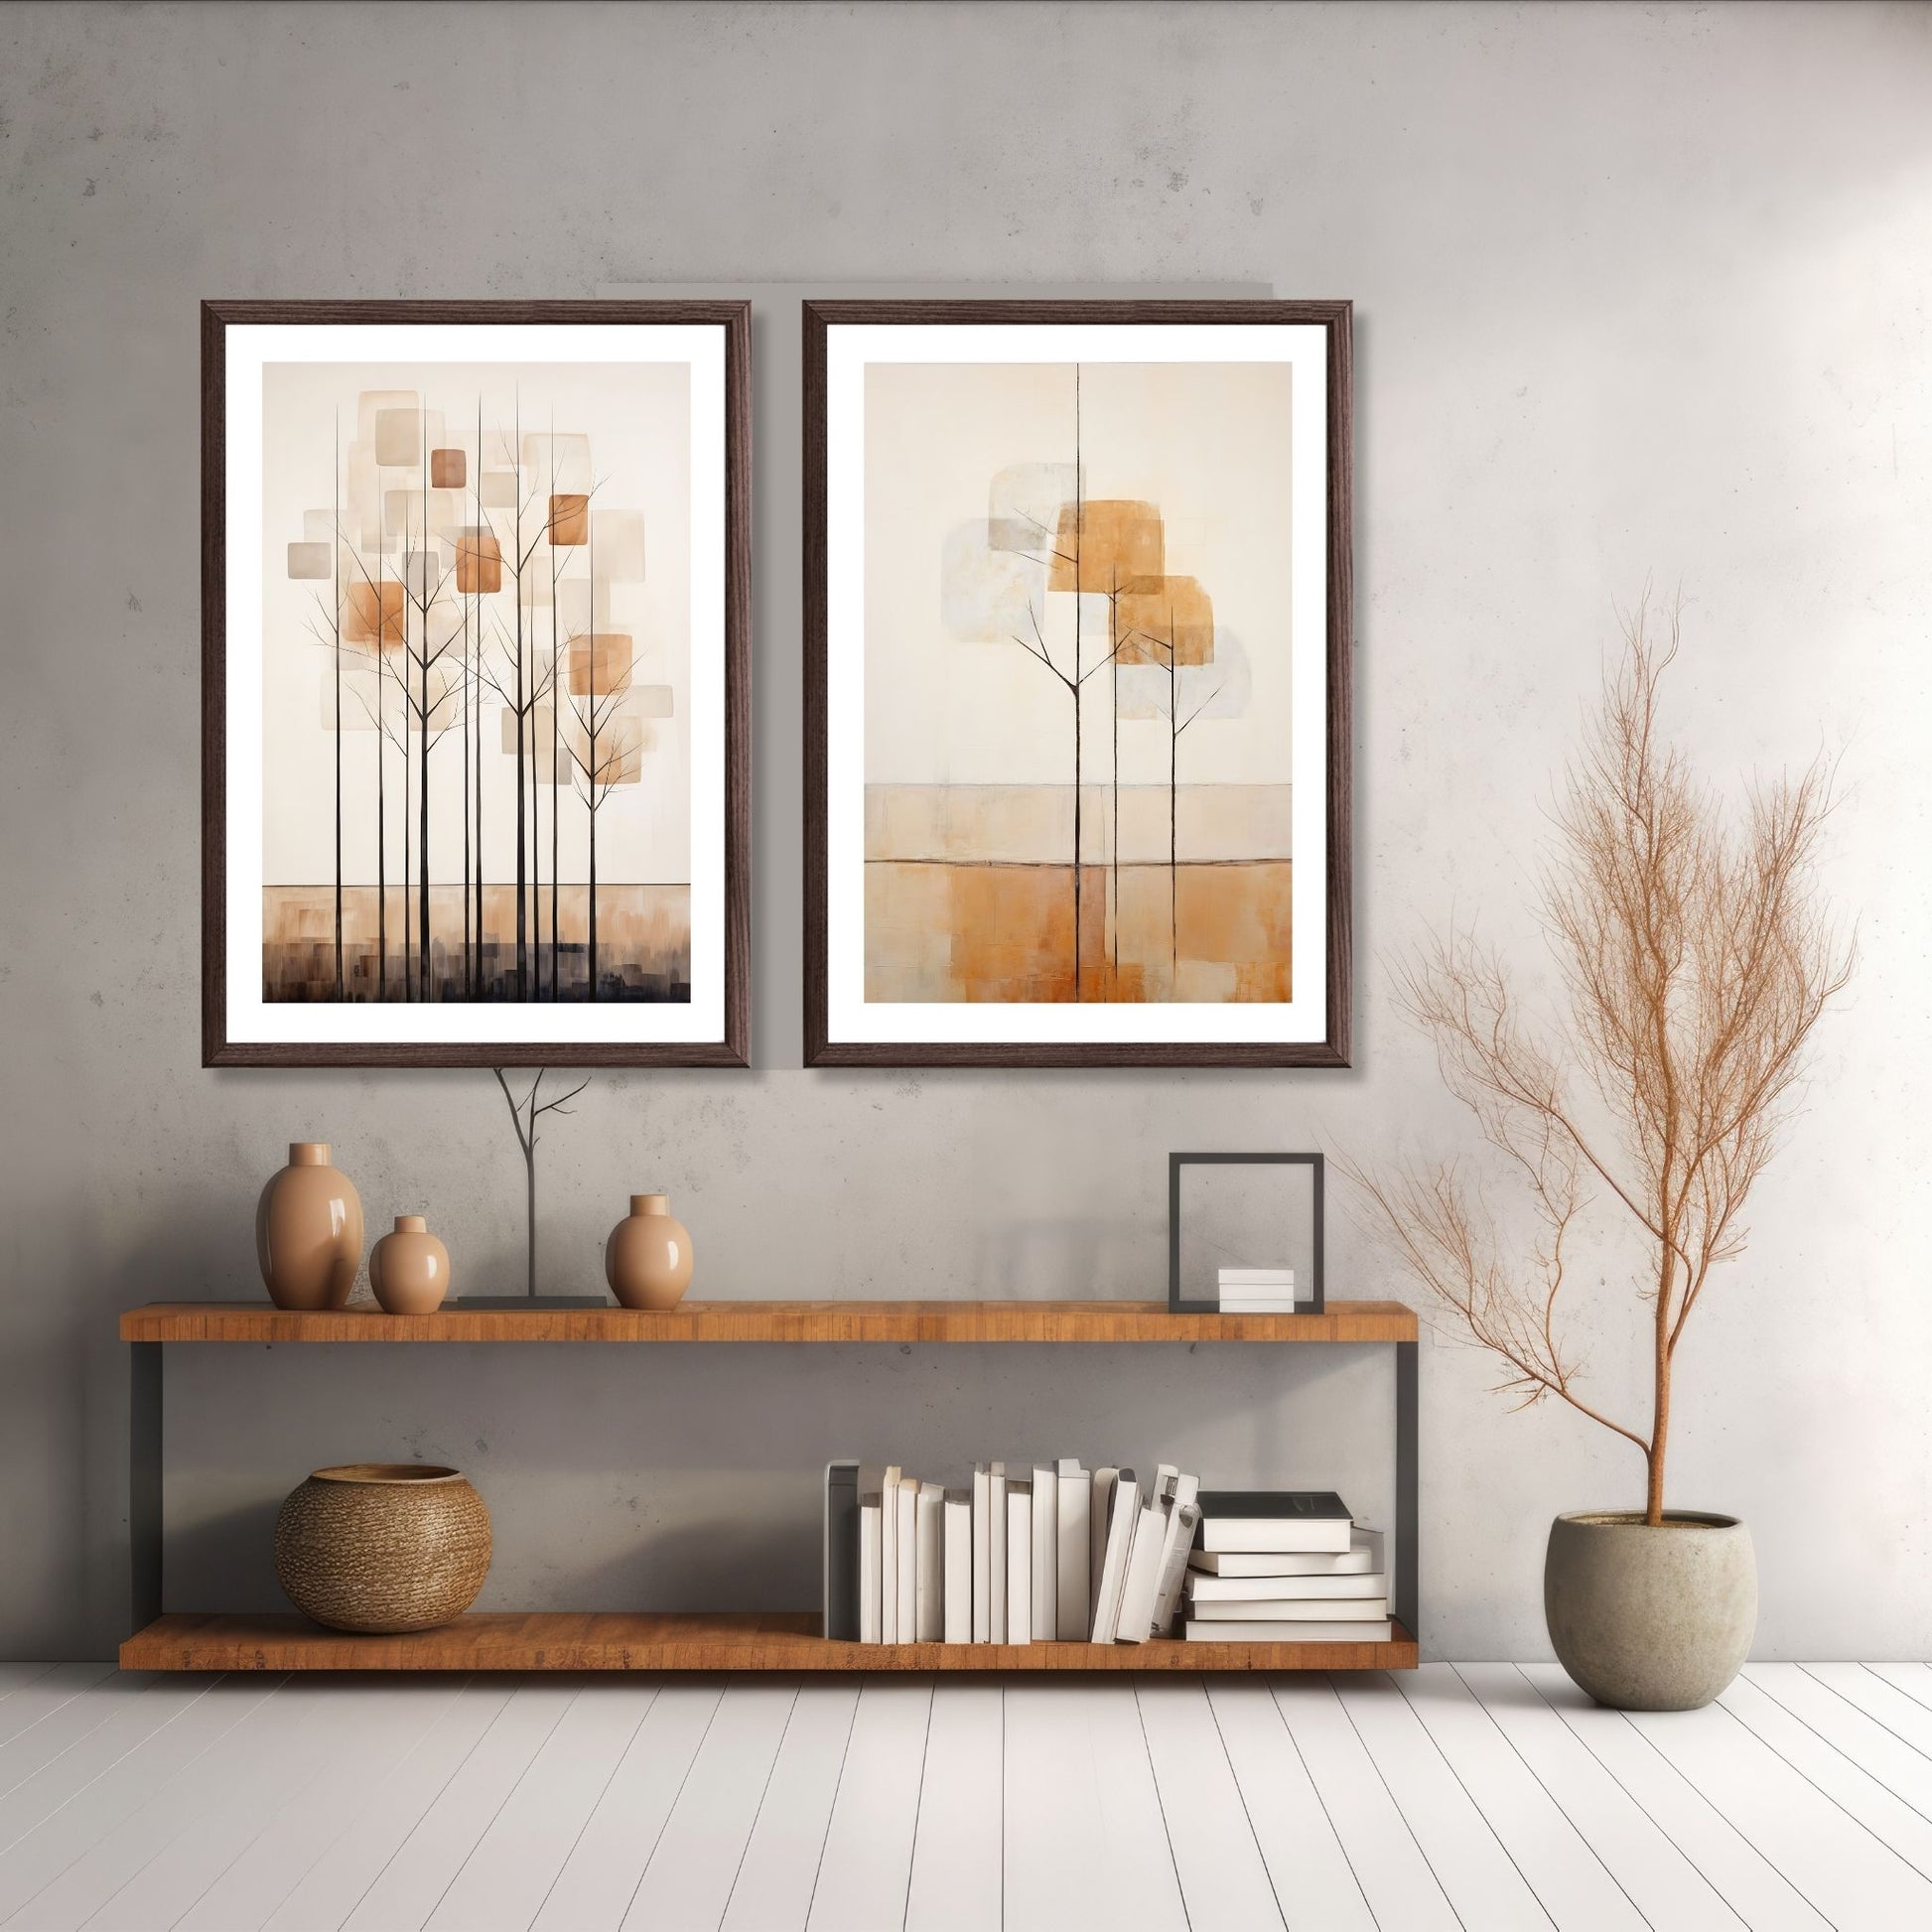 Abstract Forest - grafisk og abstrakt motiv av høye, slanke trær og skog i rust- og beige fargetoner Illustrasjon av motiv 7 og 8 i brun ramme.